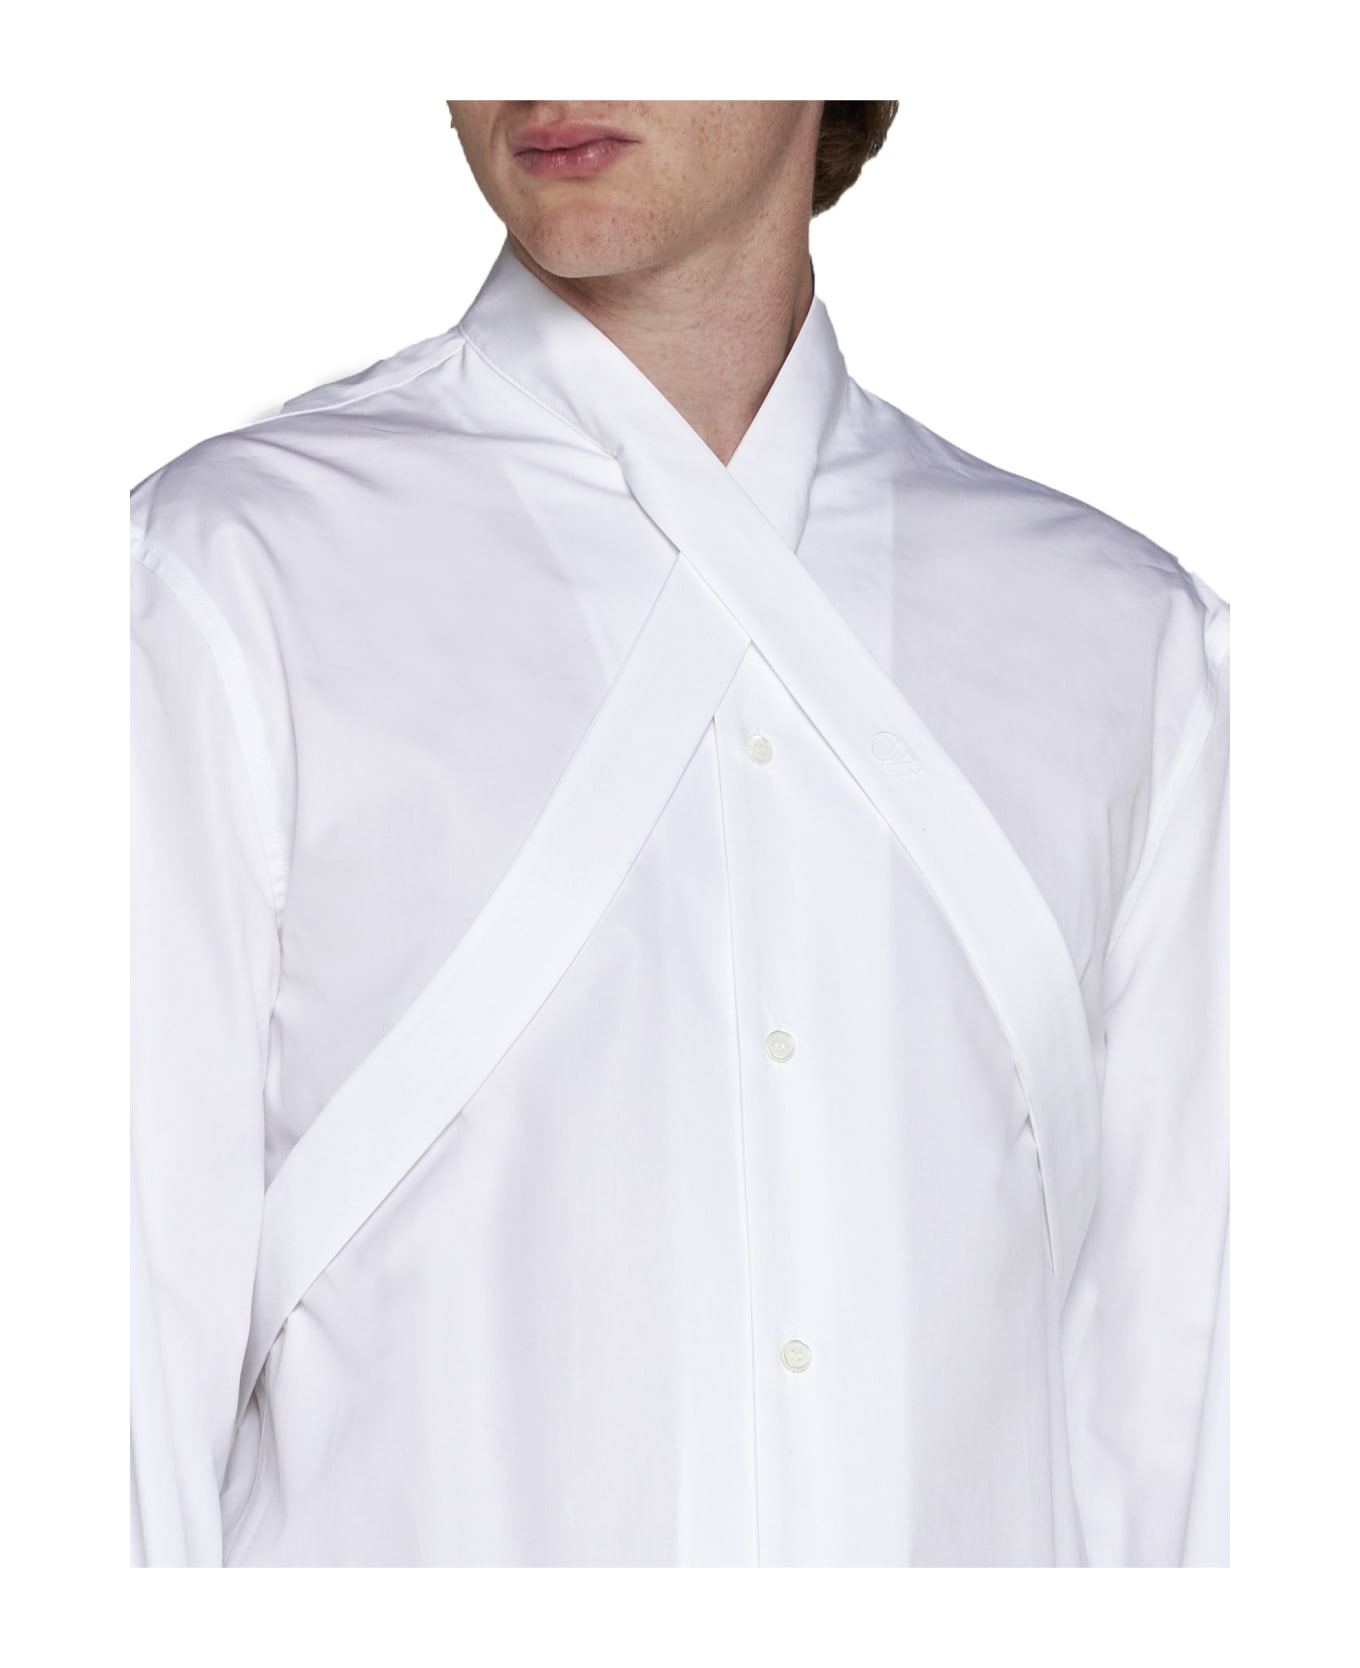 Off-White Cotton Shirt - White シャツ